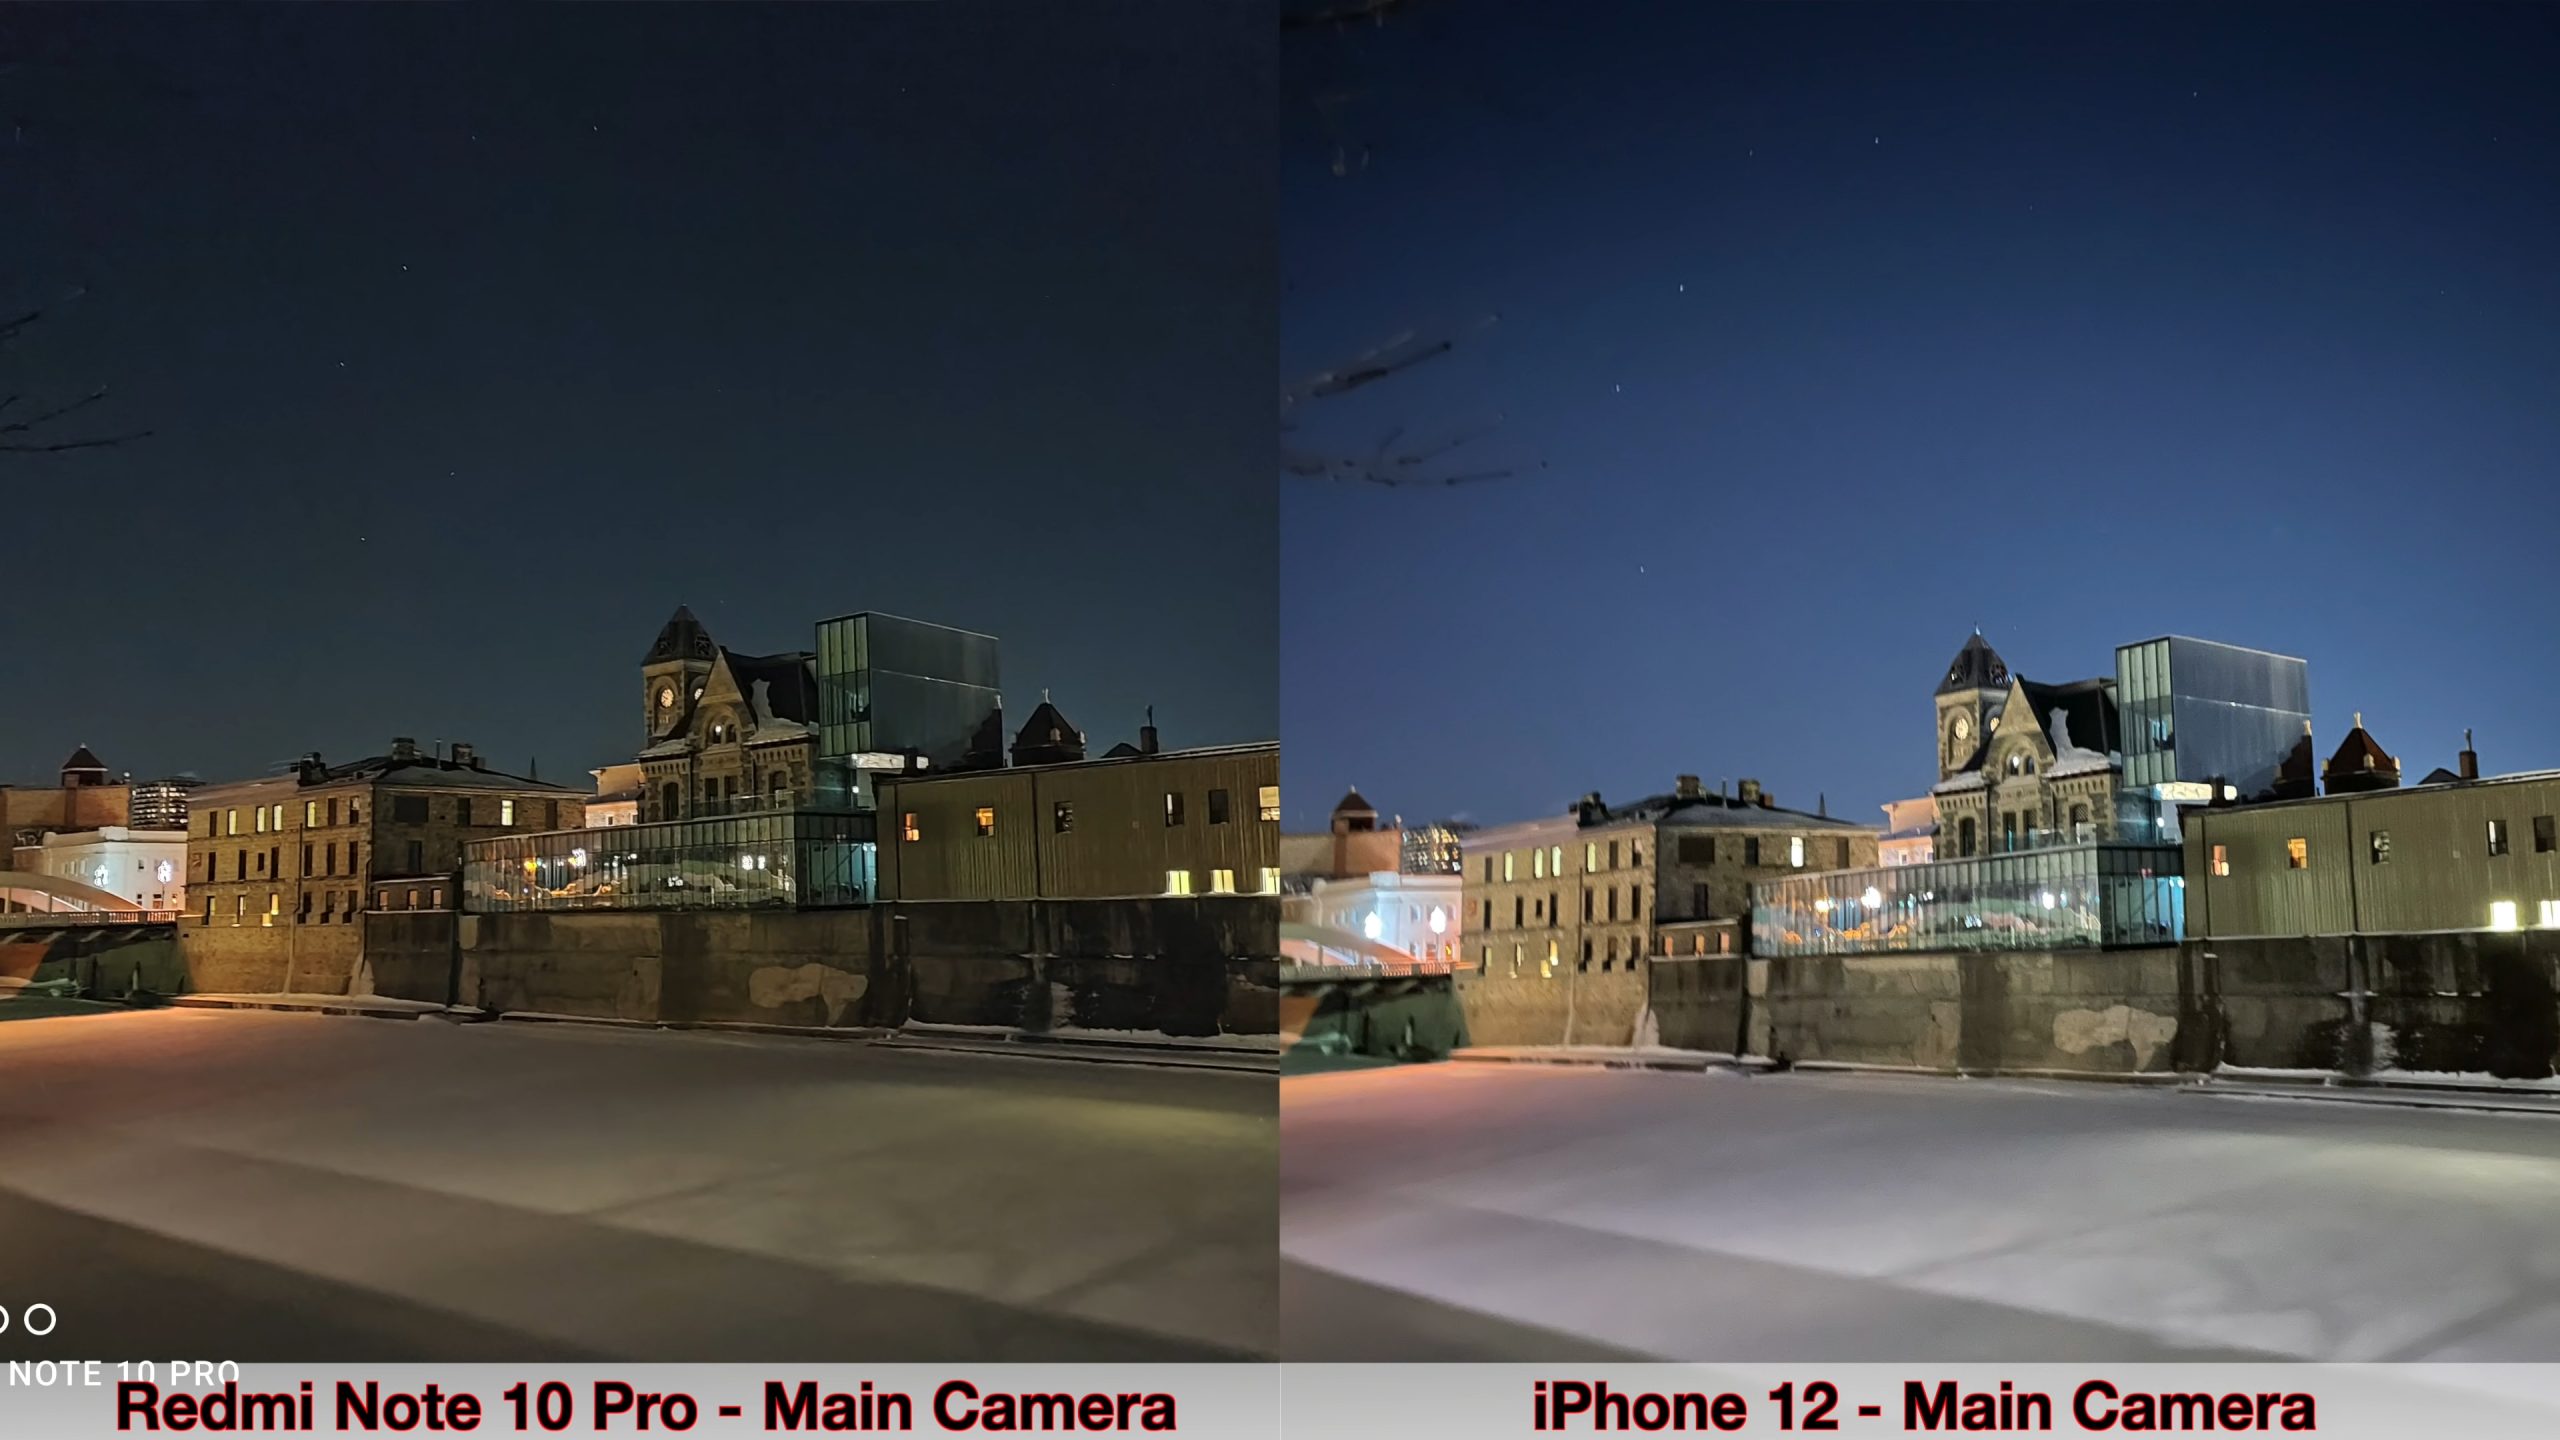 Блогер сравнил камеры Xiaomi Redmi Note 10 Pro и iPhone 12. Велика ли разница?